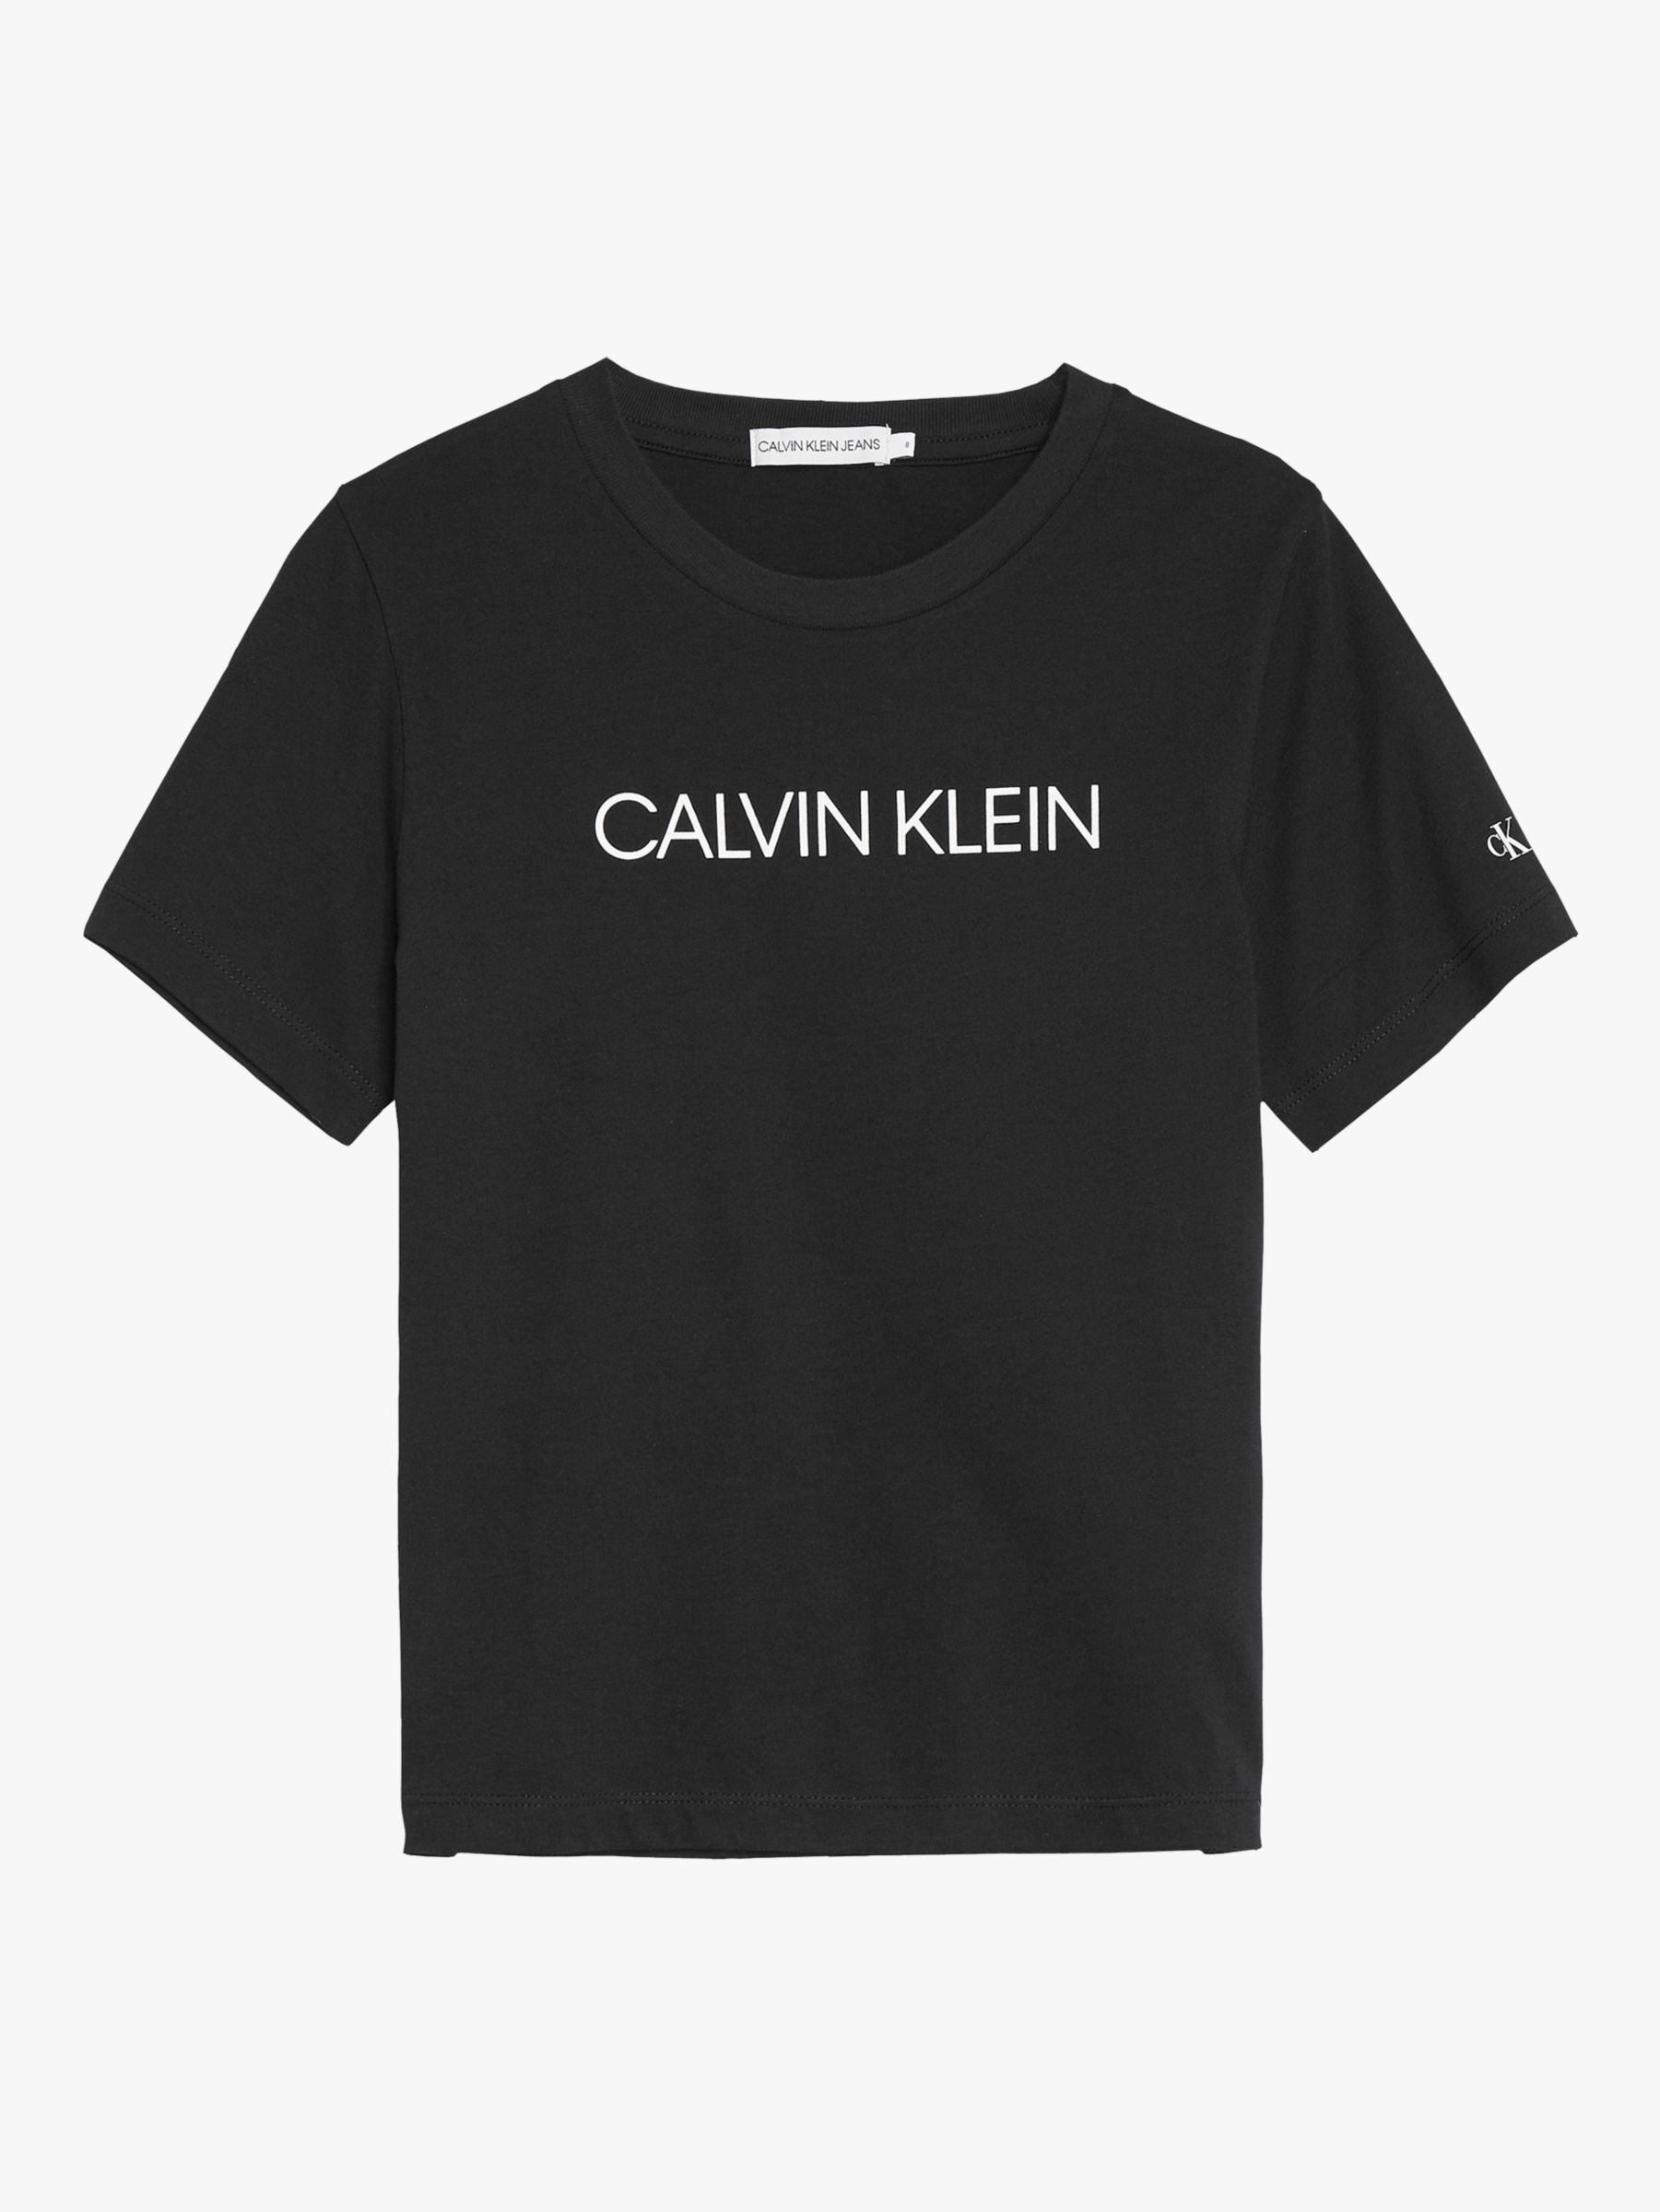 Calvin Klein True Icon Shrunken T-Shirt  Calvin klein outfits, Clothes  design, Clothes